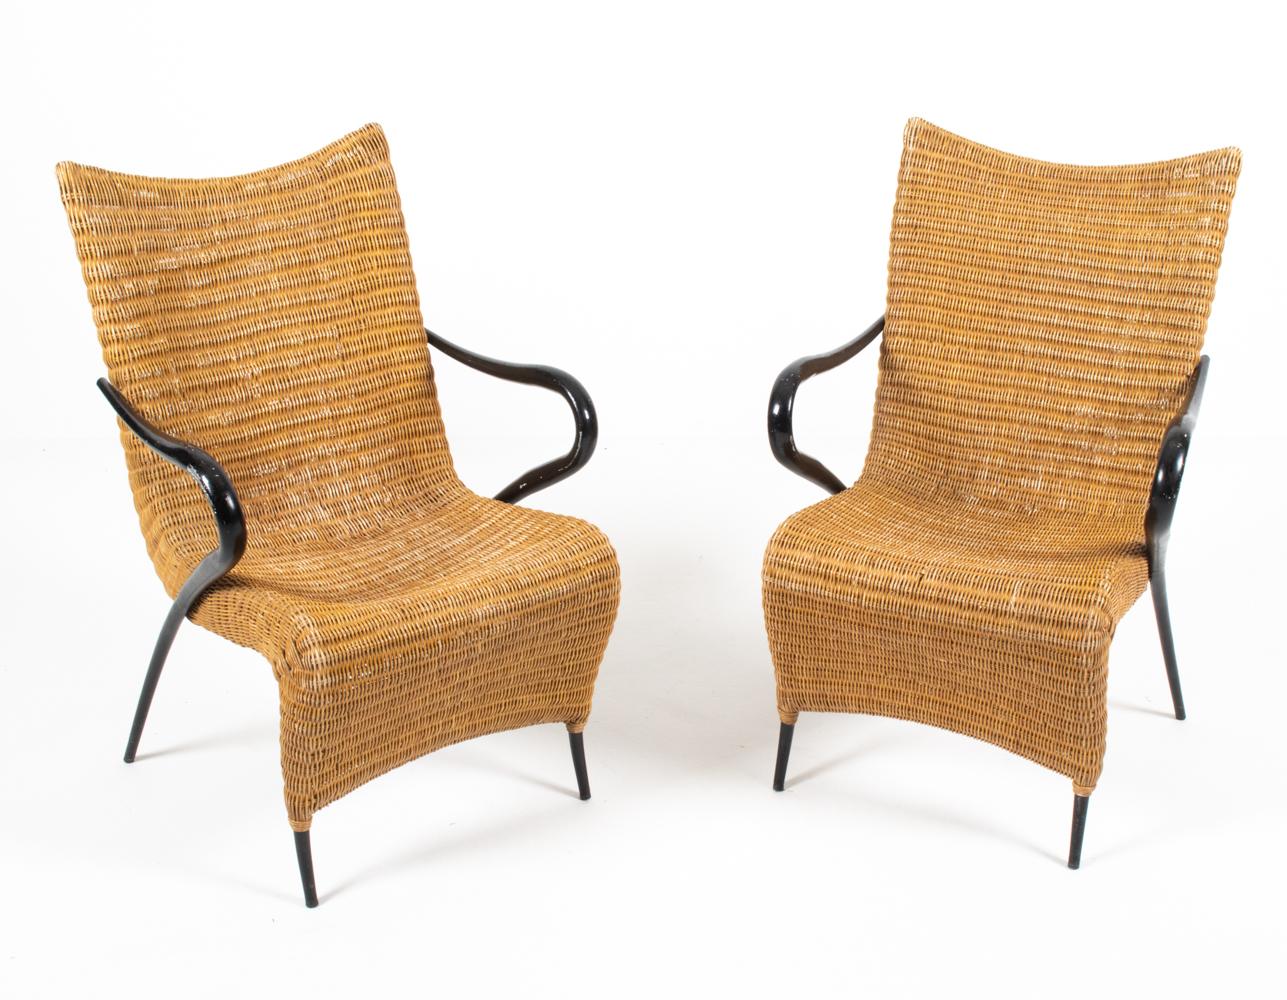 Ein seltenes und ungewöhnliches Paar moderner dänischer Sessel aus skulptural geformtem Rattan mit elegant abfallenden Armen in schwarzer Lackierung. Entworfen von Soren Lund für Soren Lund Mobler, zweite Hälfte des 20. Jahrhunderts. Diese vom